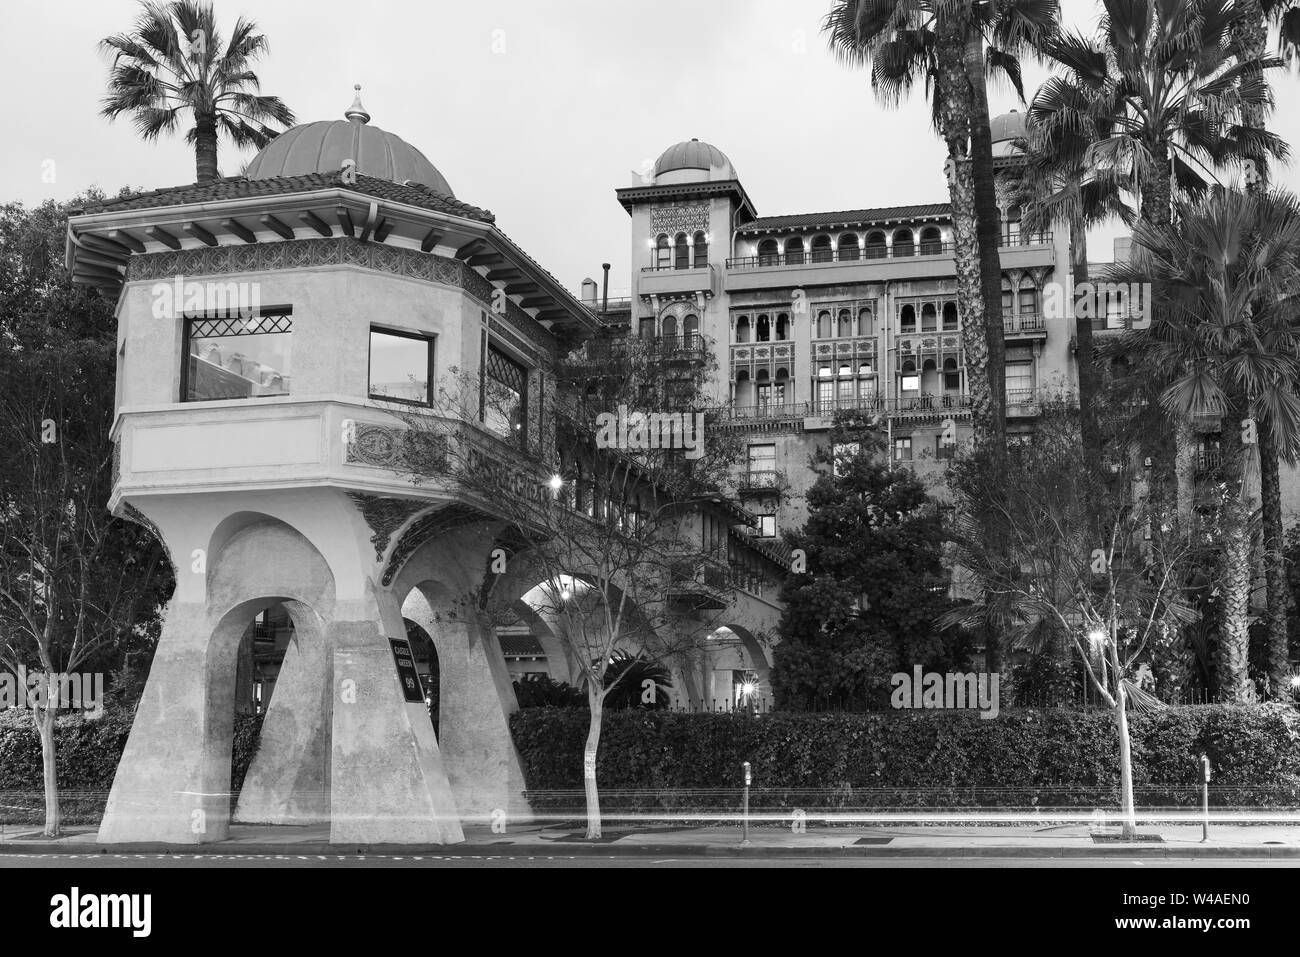 Image de Castle Green, un bâtiment historique dans la ville de Pasadena en Californie du Sud. Banque D'Images